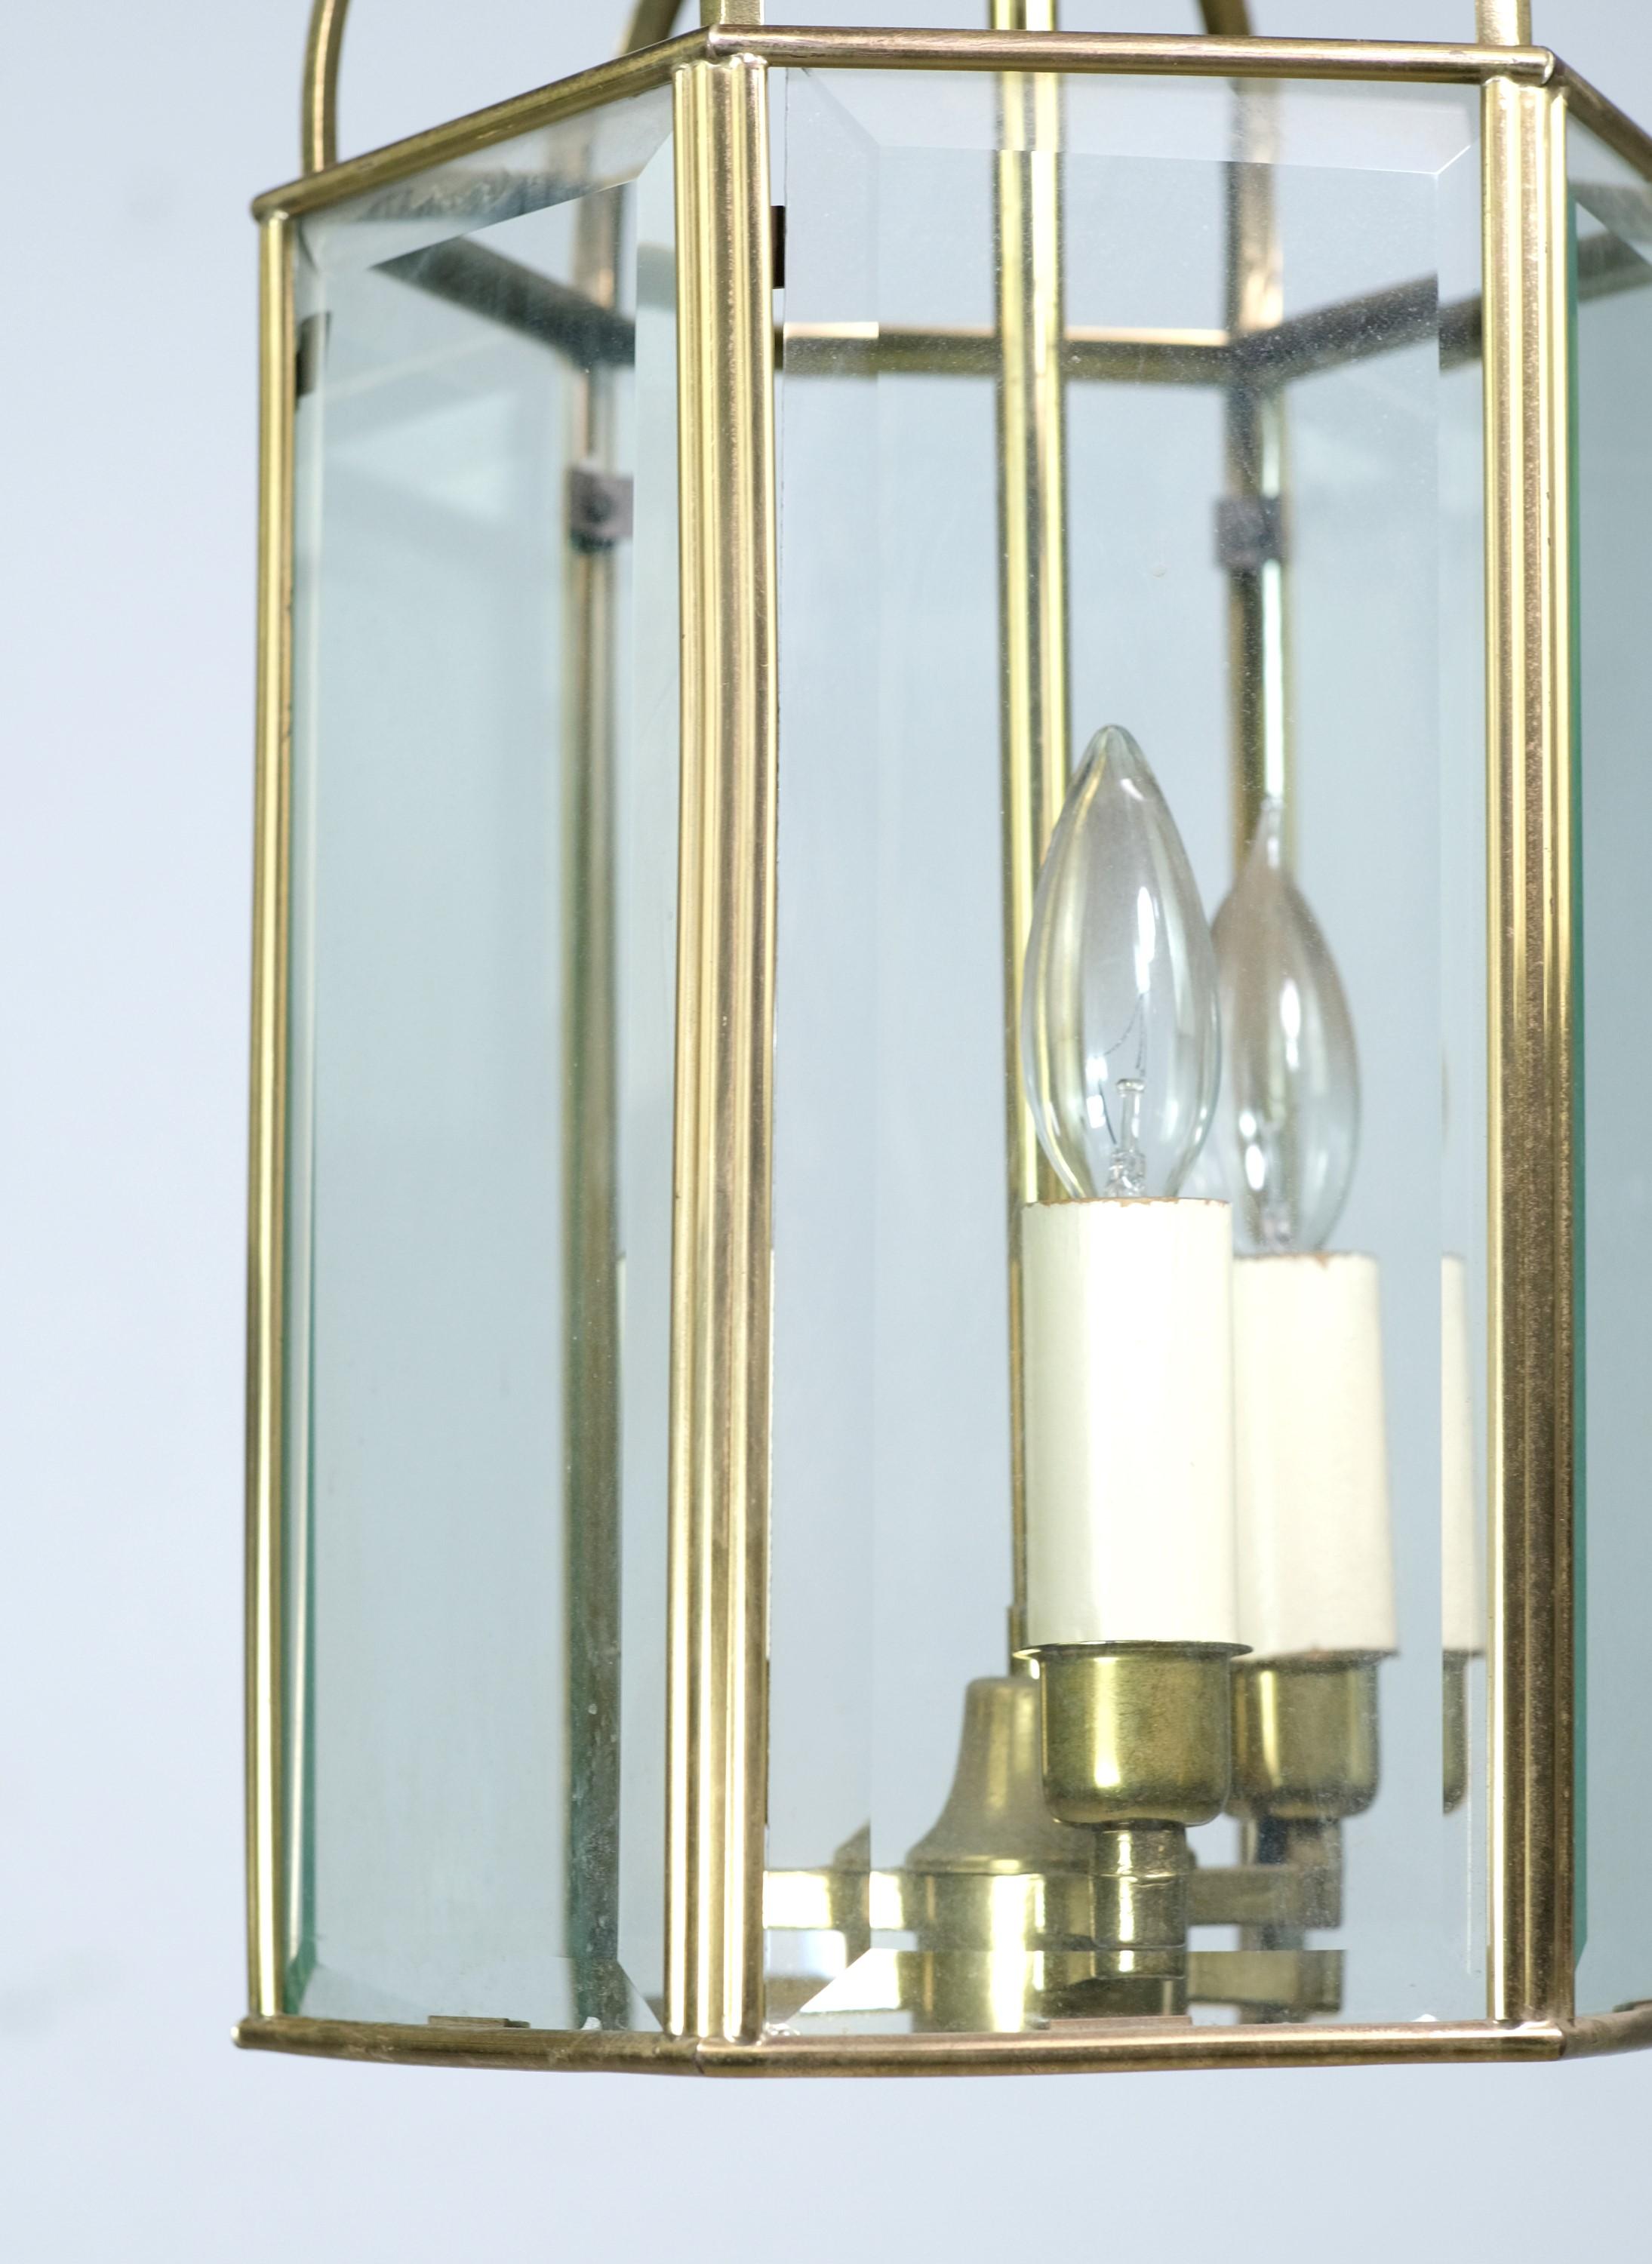 Lampe suspendue Bass du 20e siècle, avec six vitres biseautées disposées en hexagone. Accepte trois ampoules domestiques standard à culot candélabre. Nettoyé et restauré. Veuillez noter que cet article se trouve dans nos locaux de Scranton, en